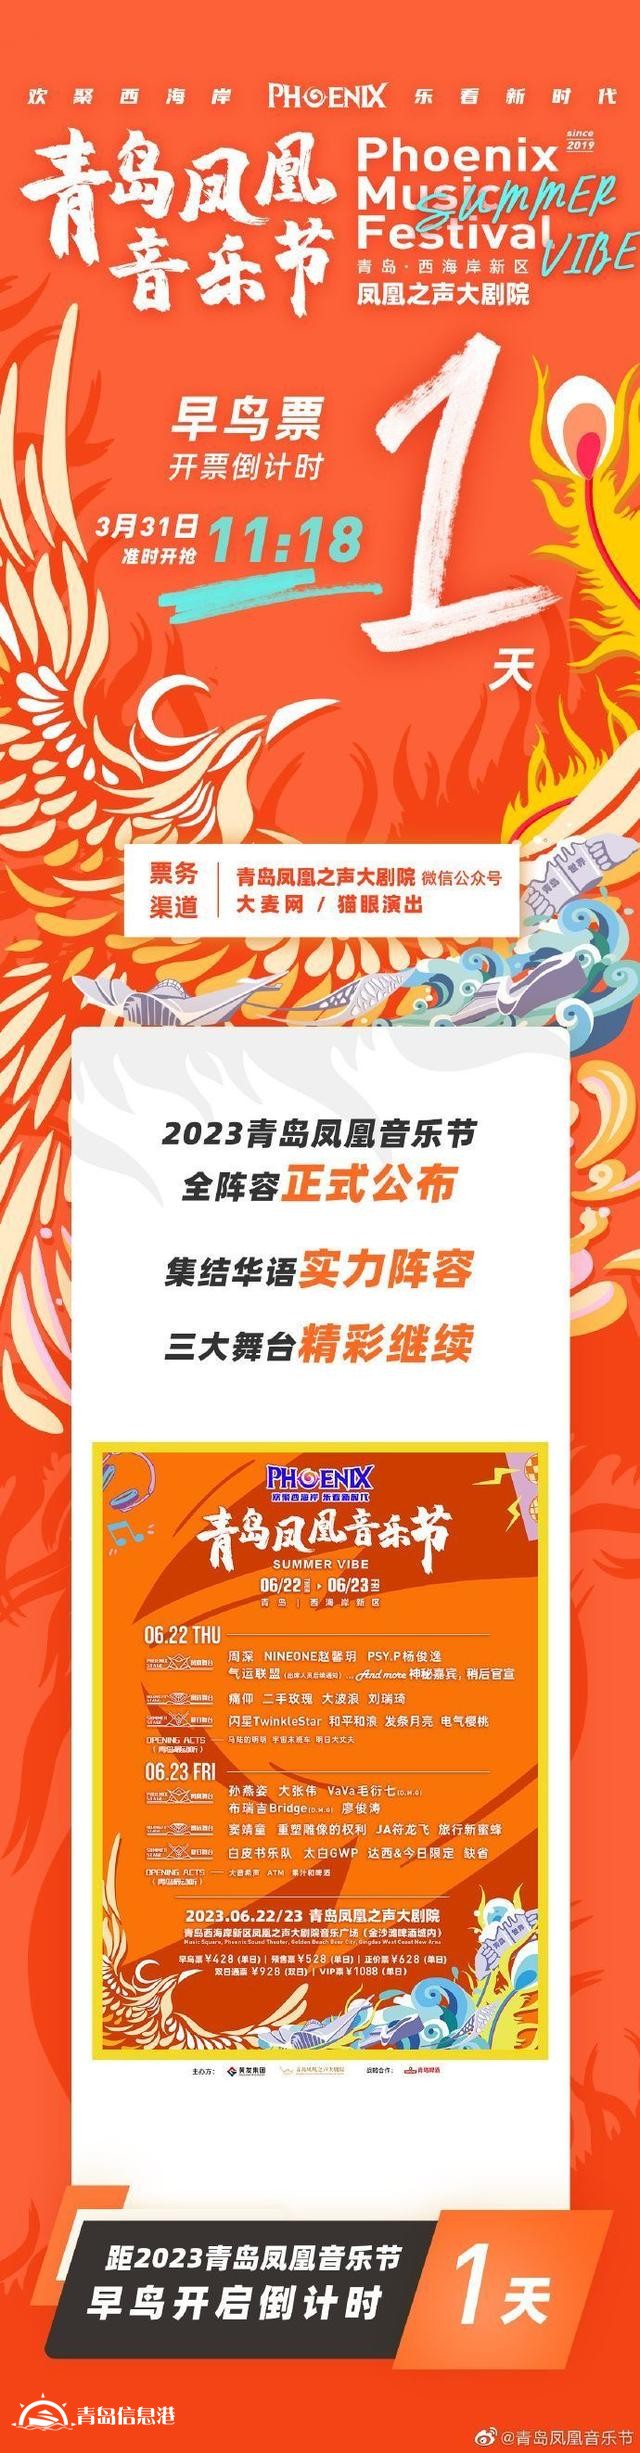 青岛凤凰音乐节6月22日至23日举办 孙燕姿周深等加盟